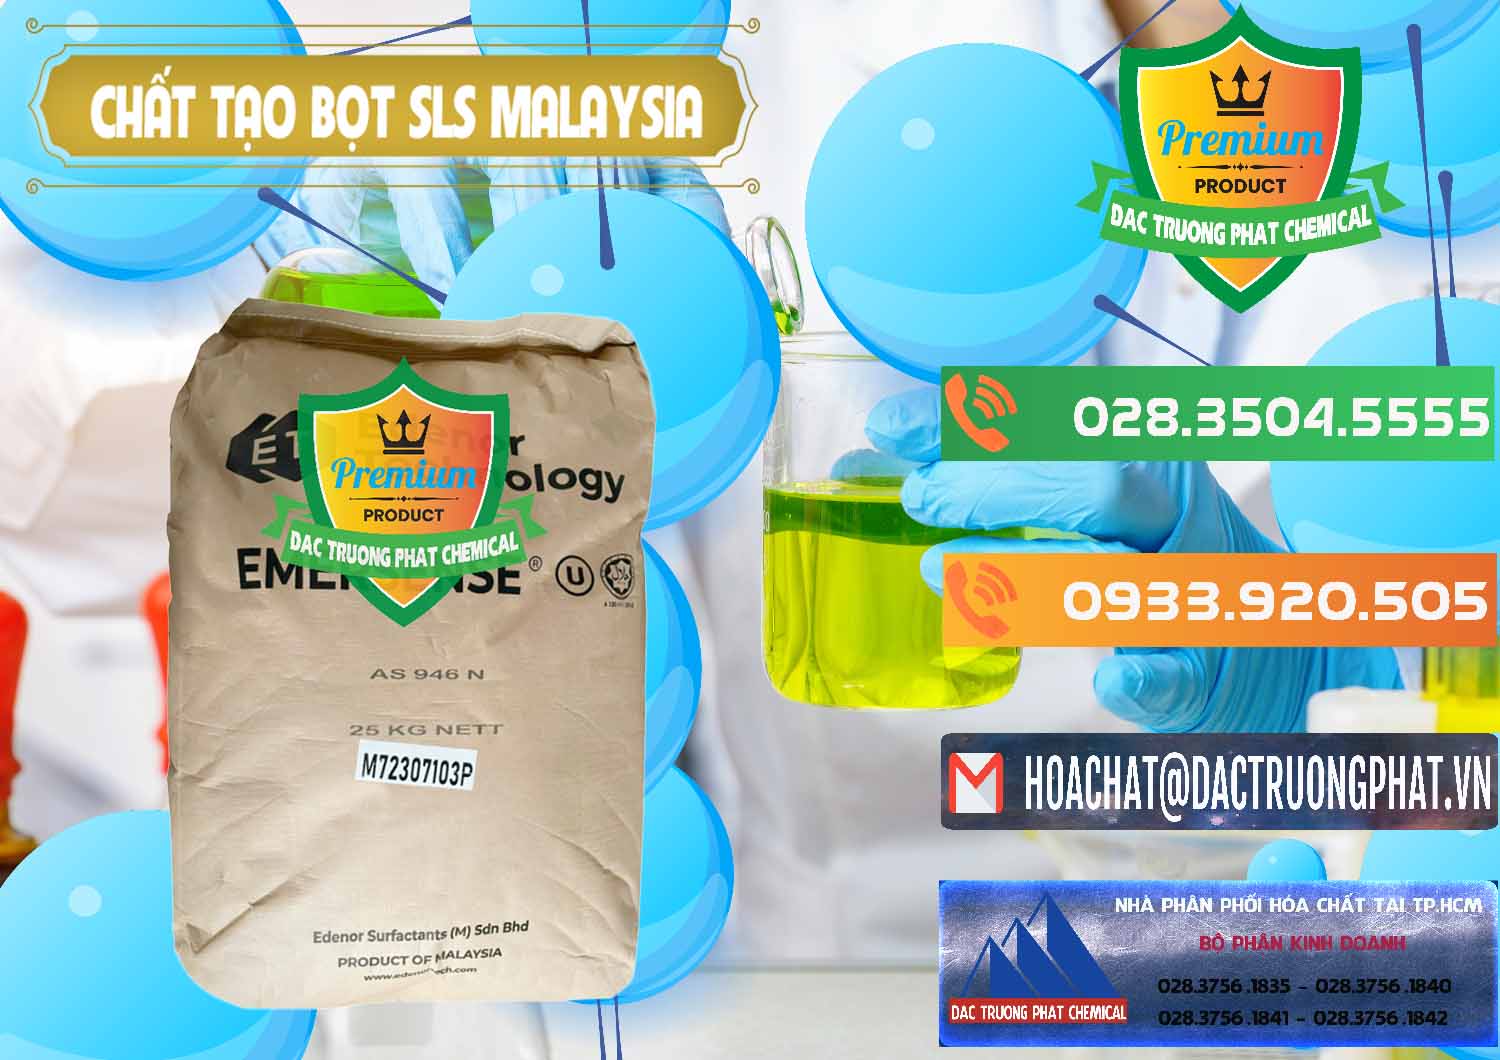 Công ty bán & cung ứng Chất Tạo Bọt SLS Emersense Mã Lai Malaysia - 0381 - Cty chuyên nhập khẩu _ cung cấp hóa chất tại TP.HCM - hoachatxulynuoc.com.vn